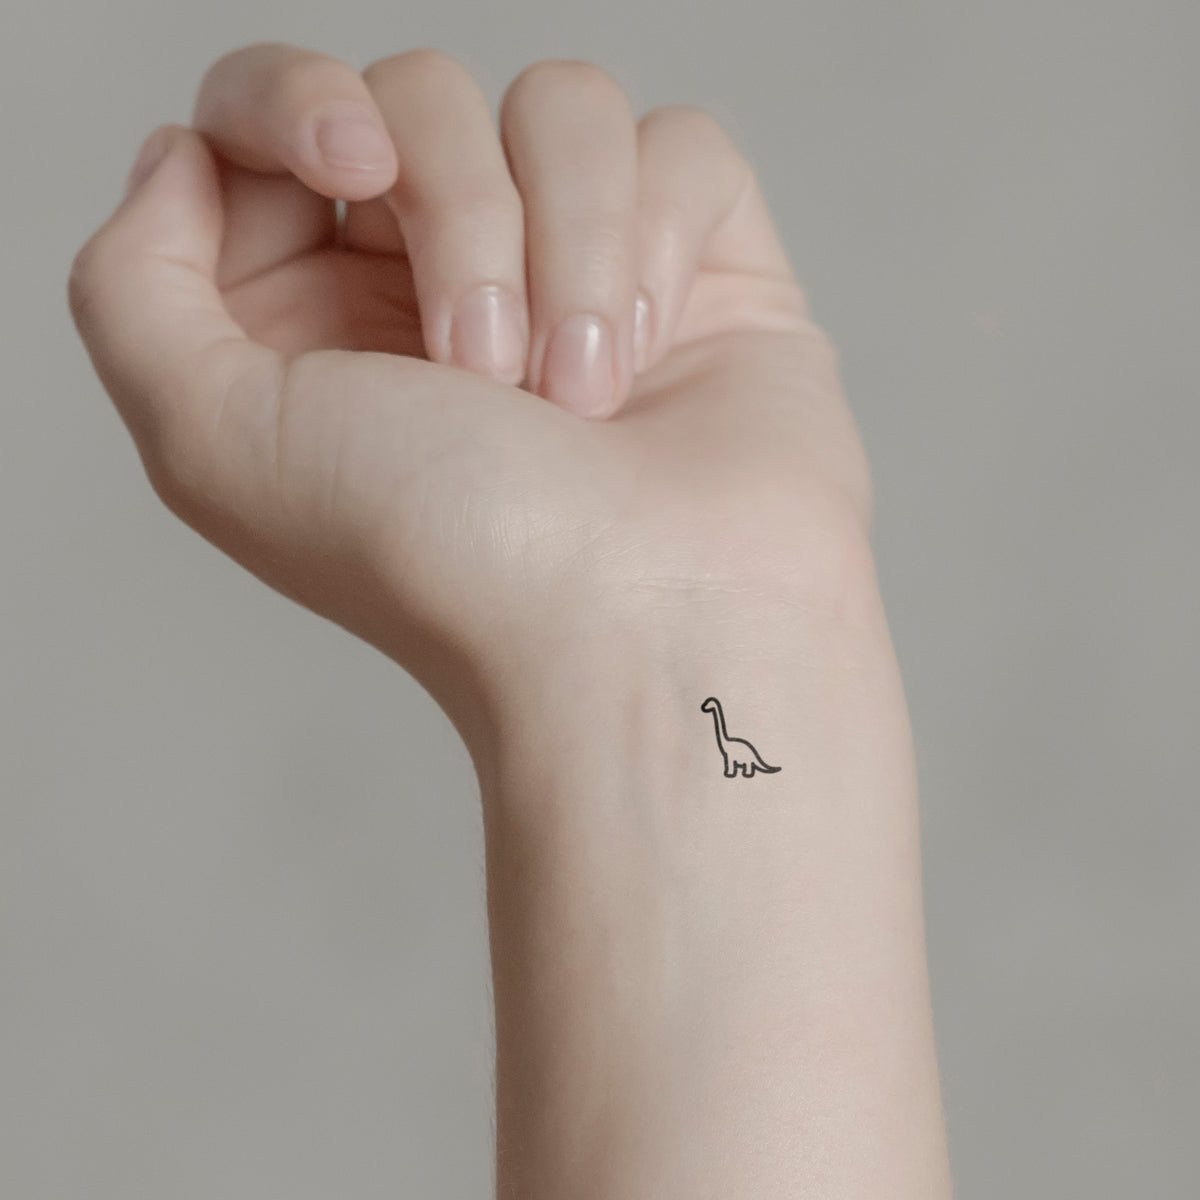 Brontosaurus tattoo | Dinosaur tattoos, Simple wrist tattoos, Tattoos